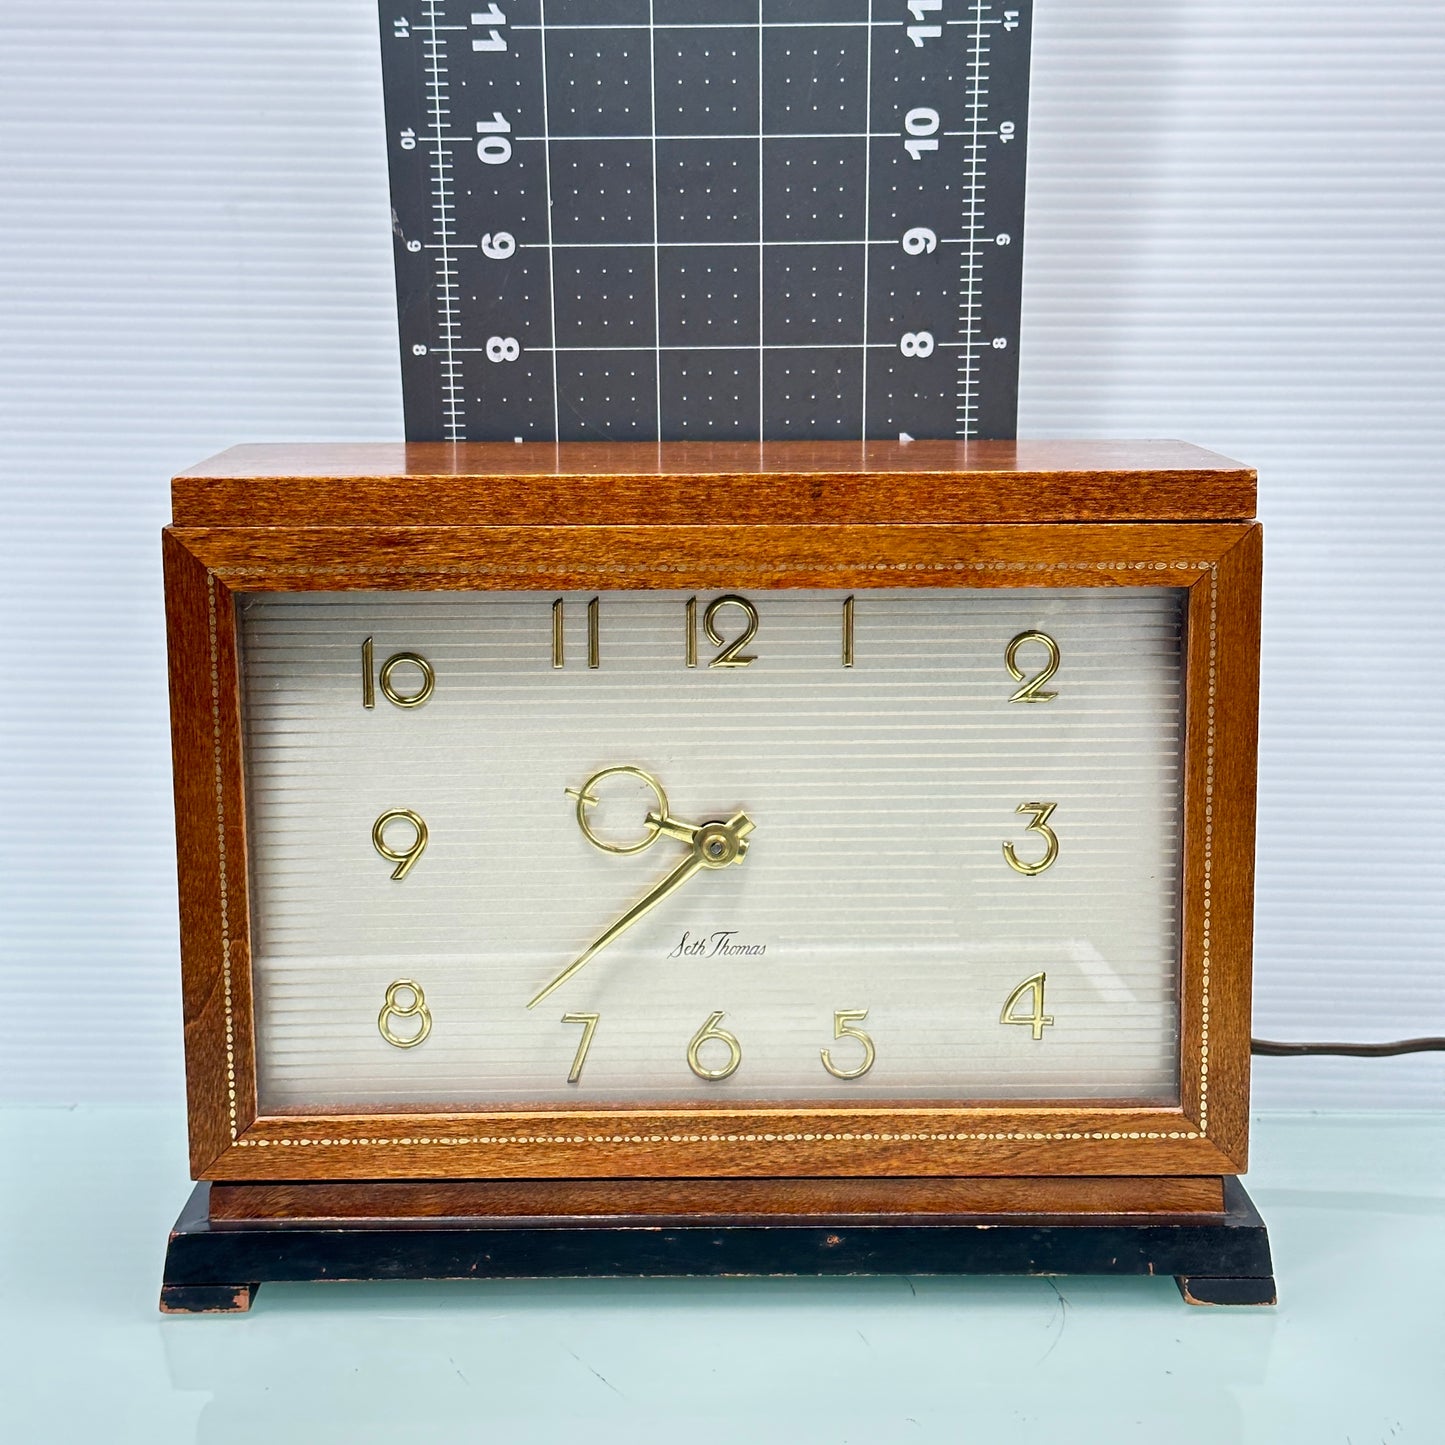 Vintage Seth Thomas Wood Case Mantle Clock Model E515-000